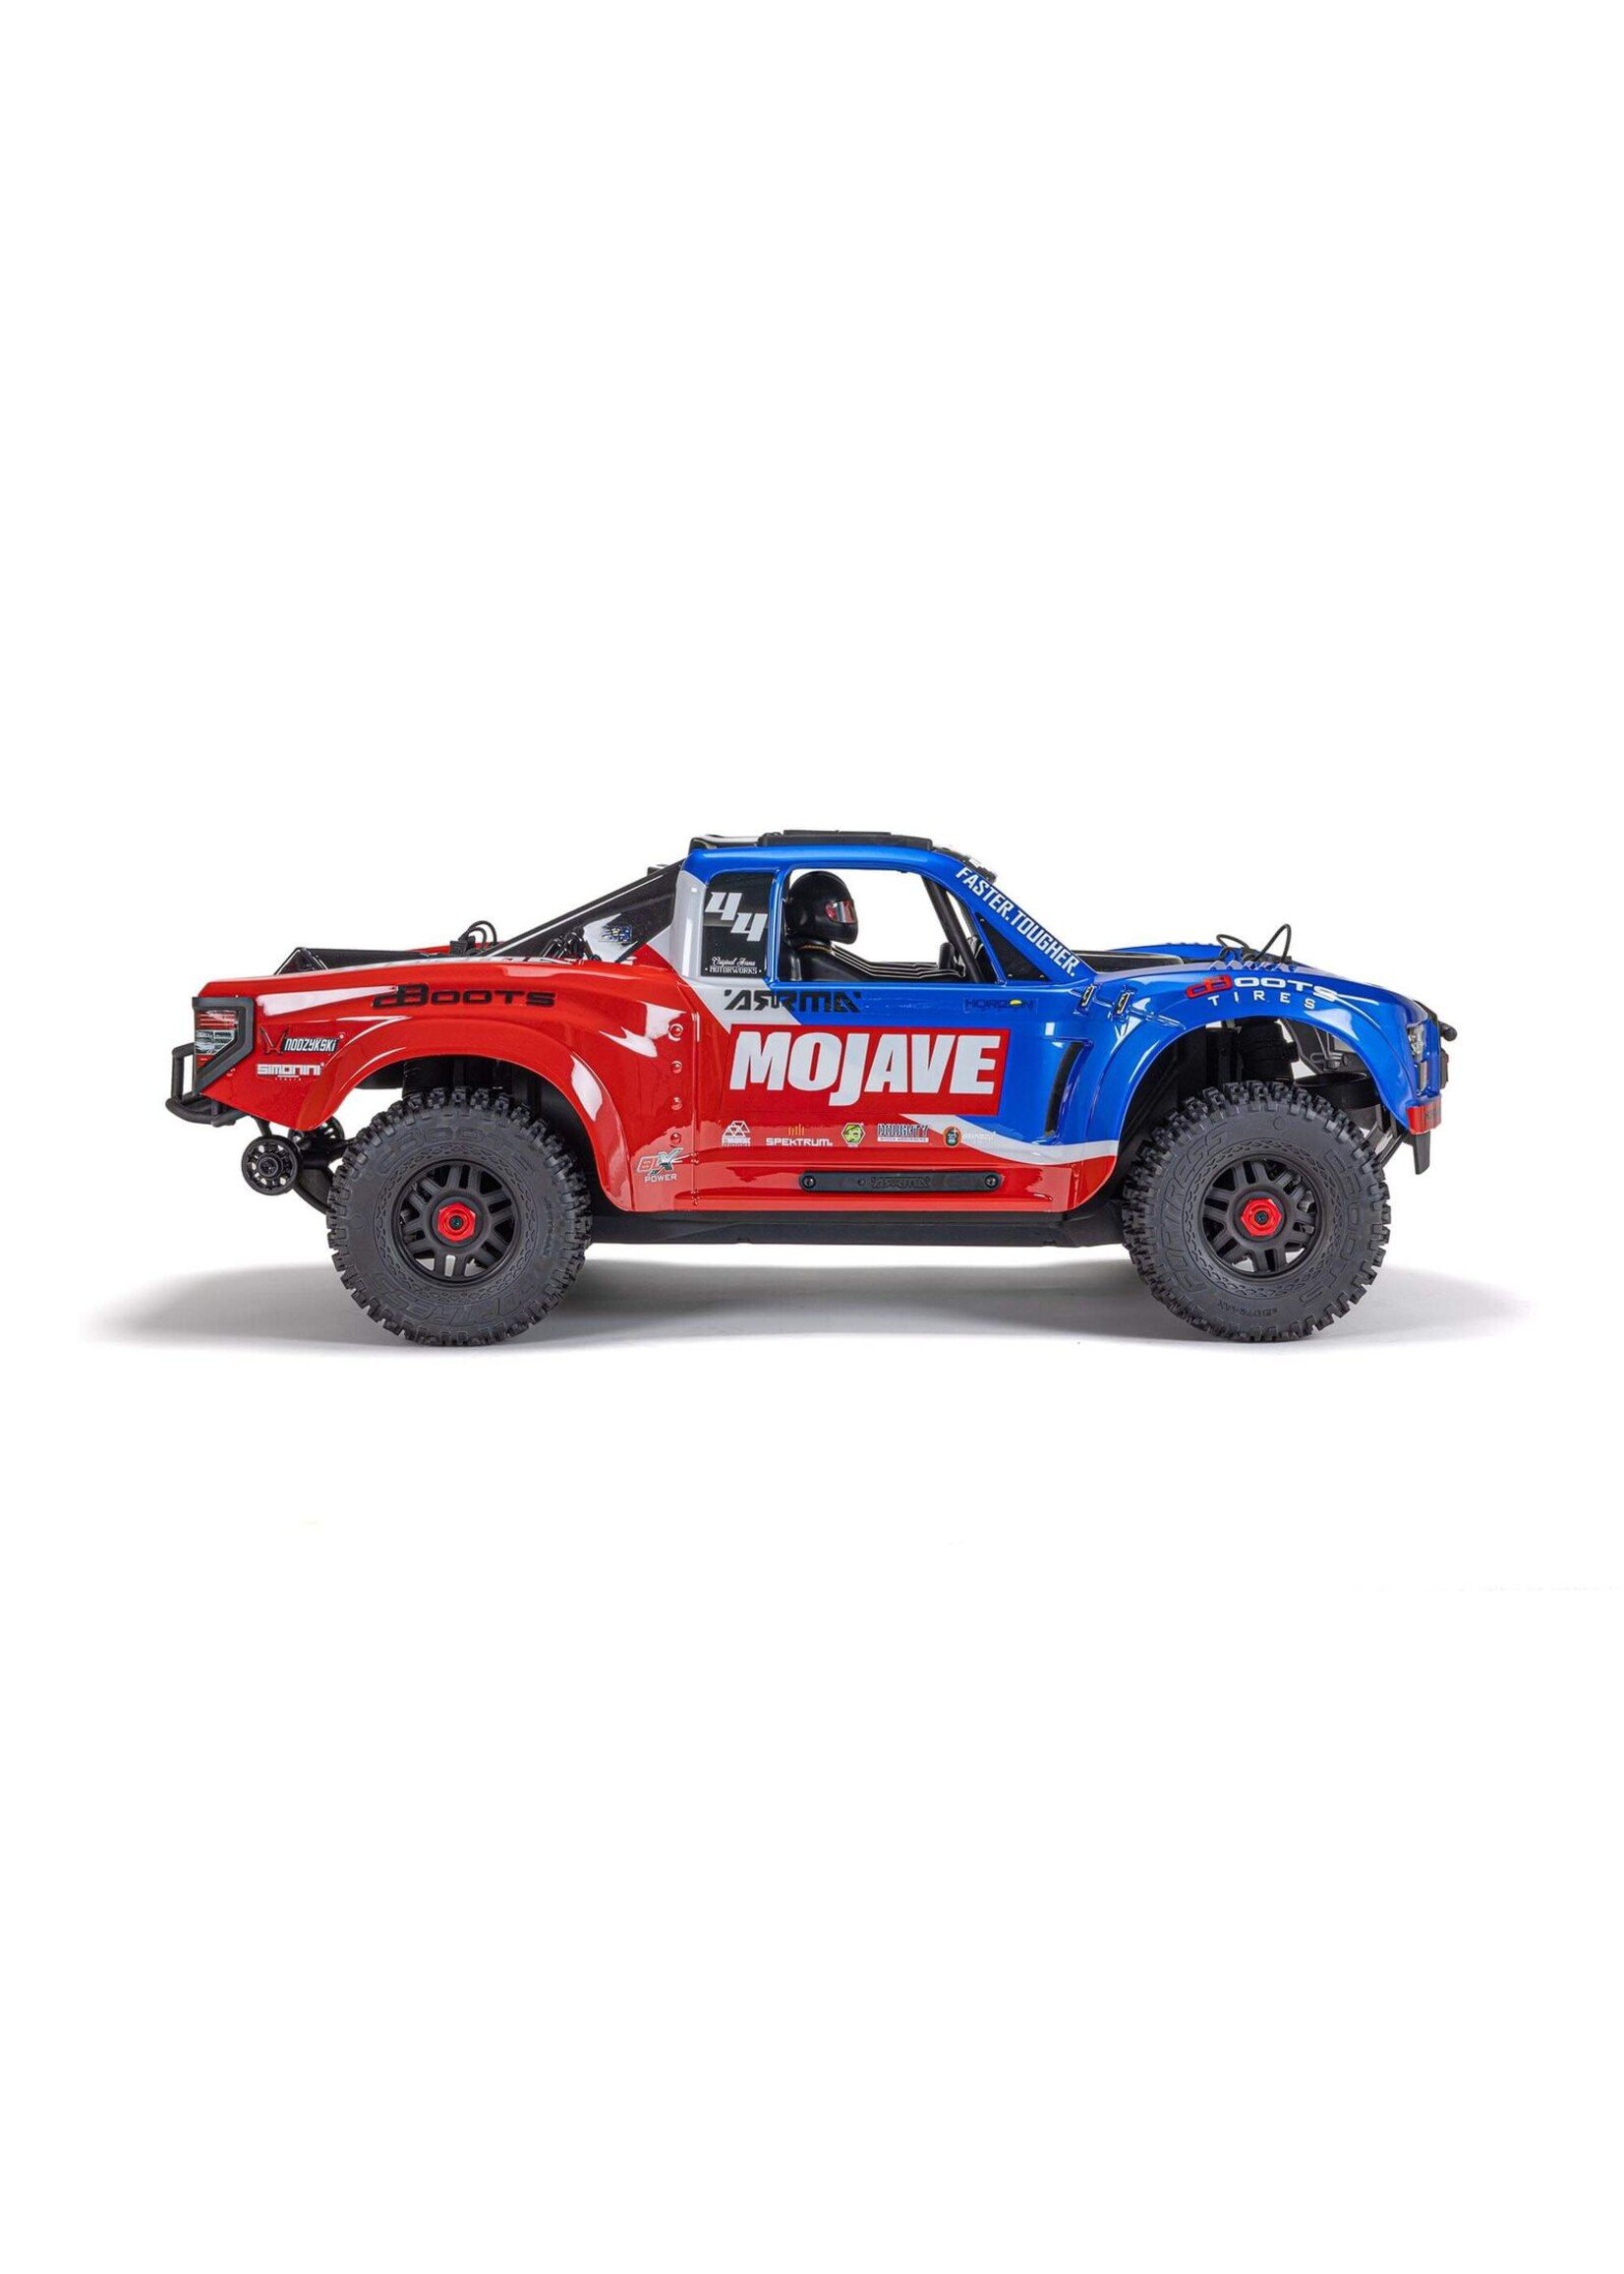 Arrma 1/8 Mojave 4x4 4S BLX Desert Truck - Blue